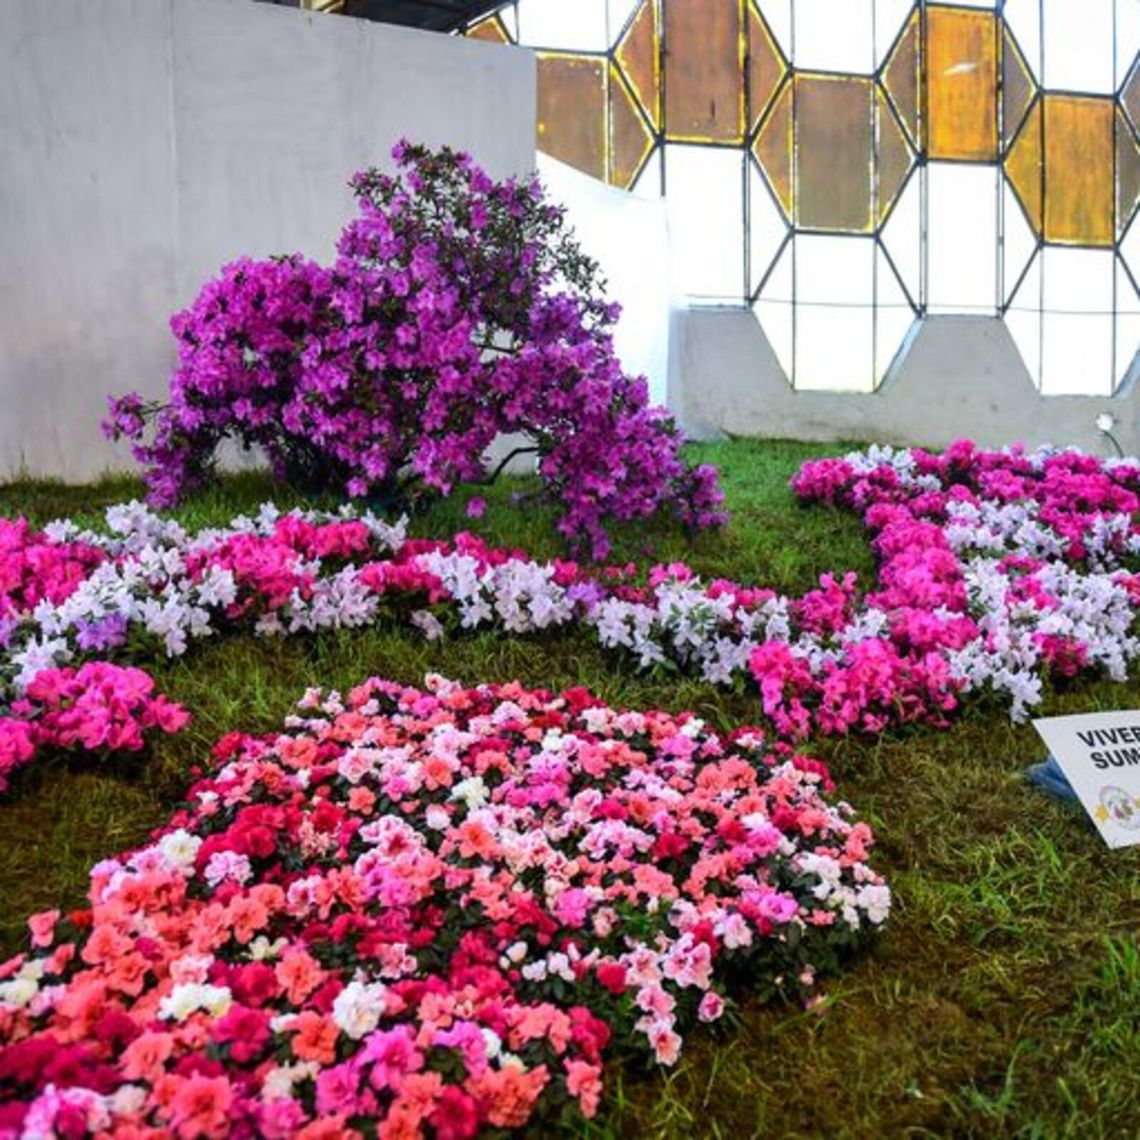 La Fiesta Nacional de la Flor celebra este año su 60° aniversario.